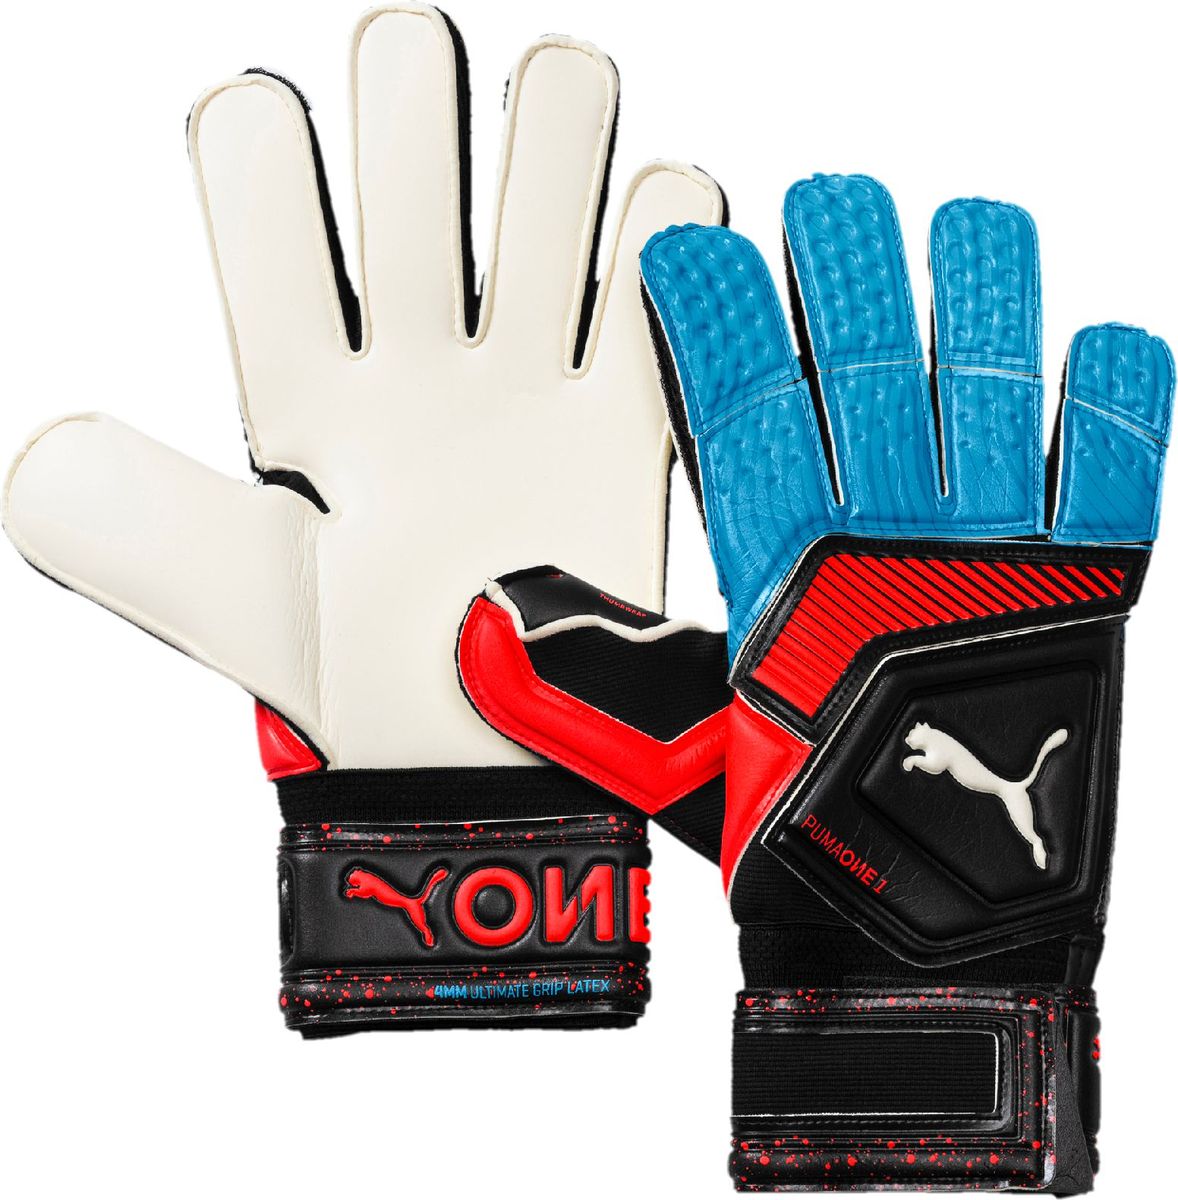 Перчатки вратарские Puma One Grip 1 RC, 04147021, черный, синий, размер 7